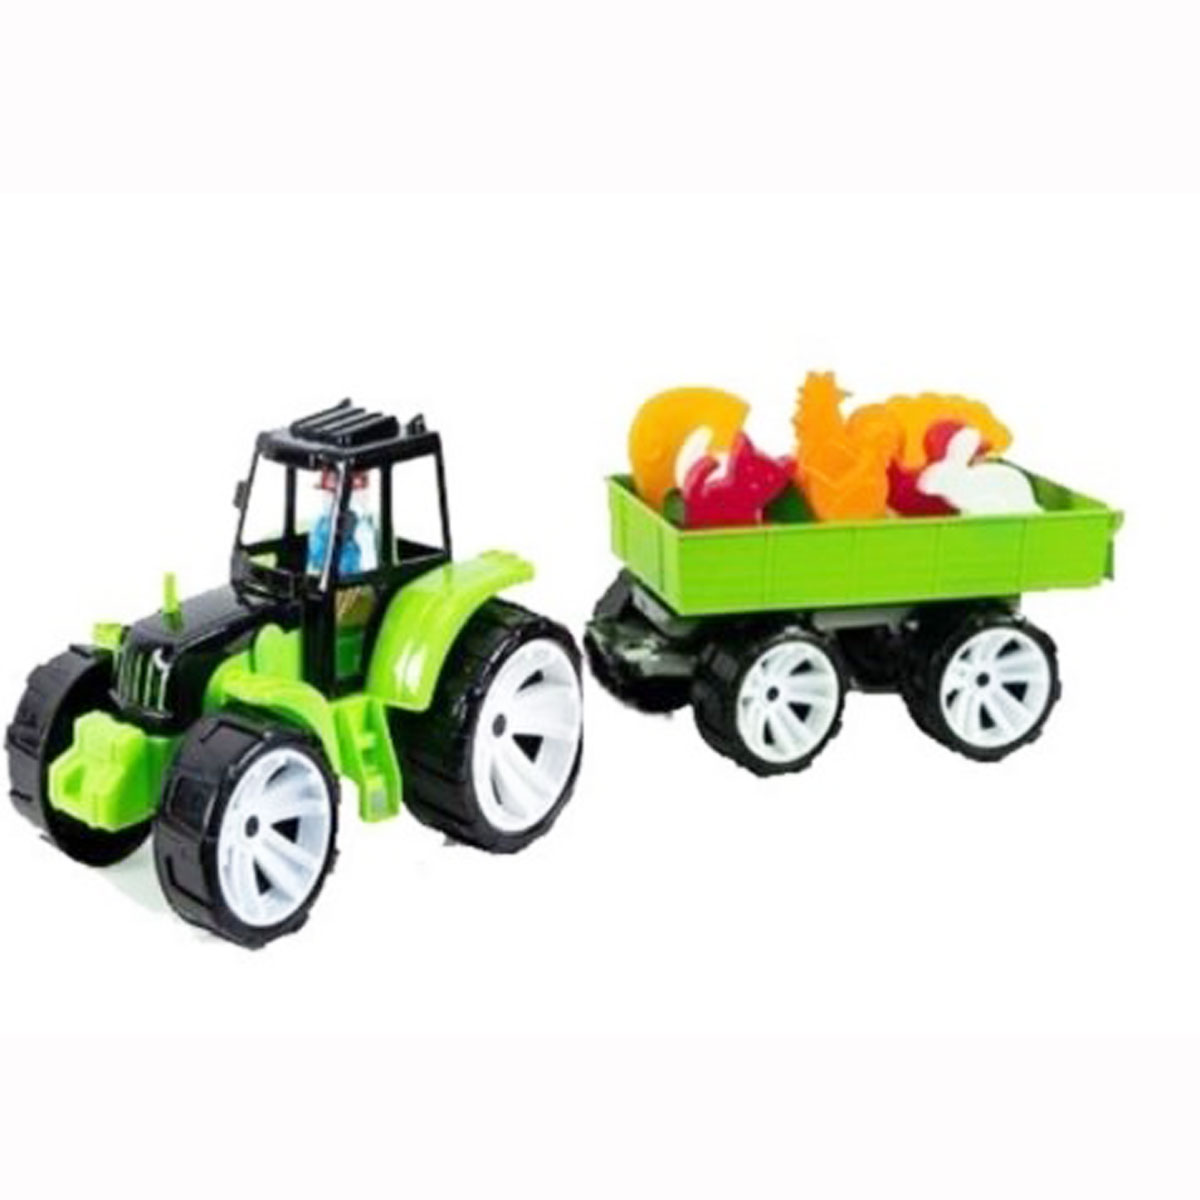 Трактор игрушечный 'Ферма' цветной